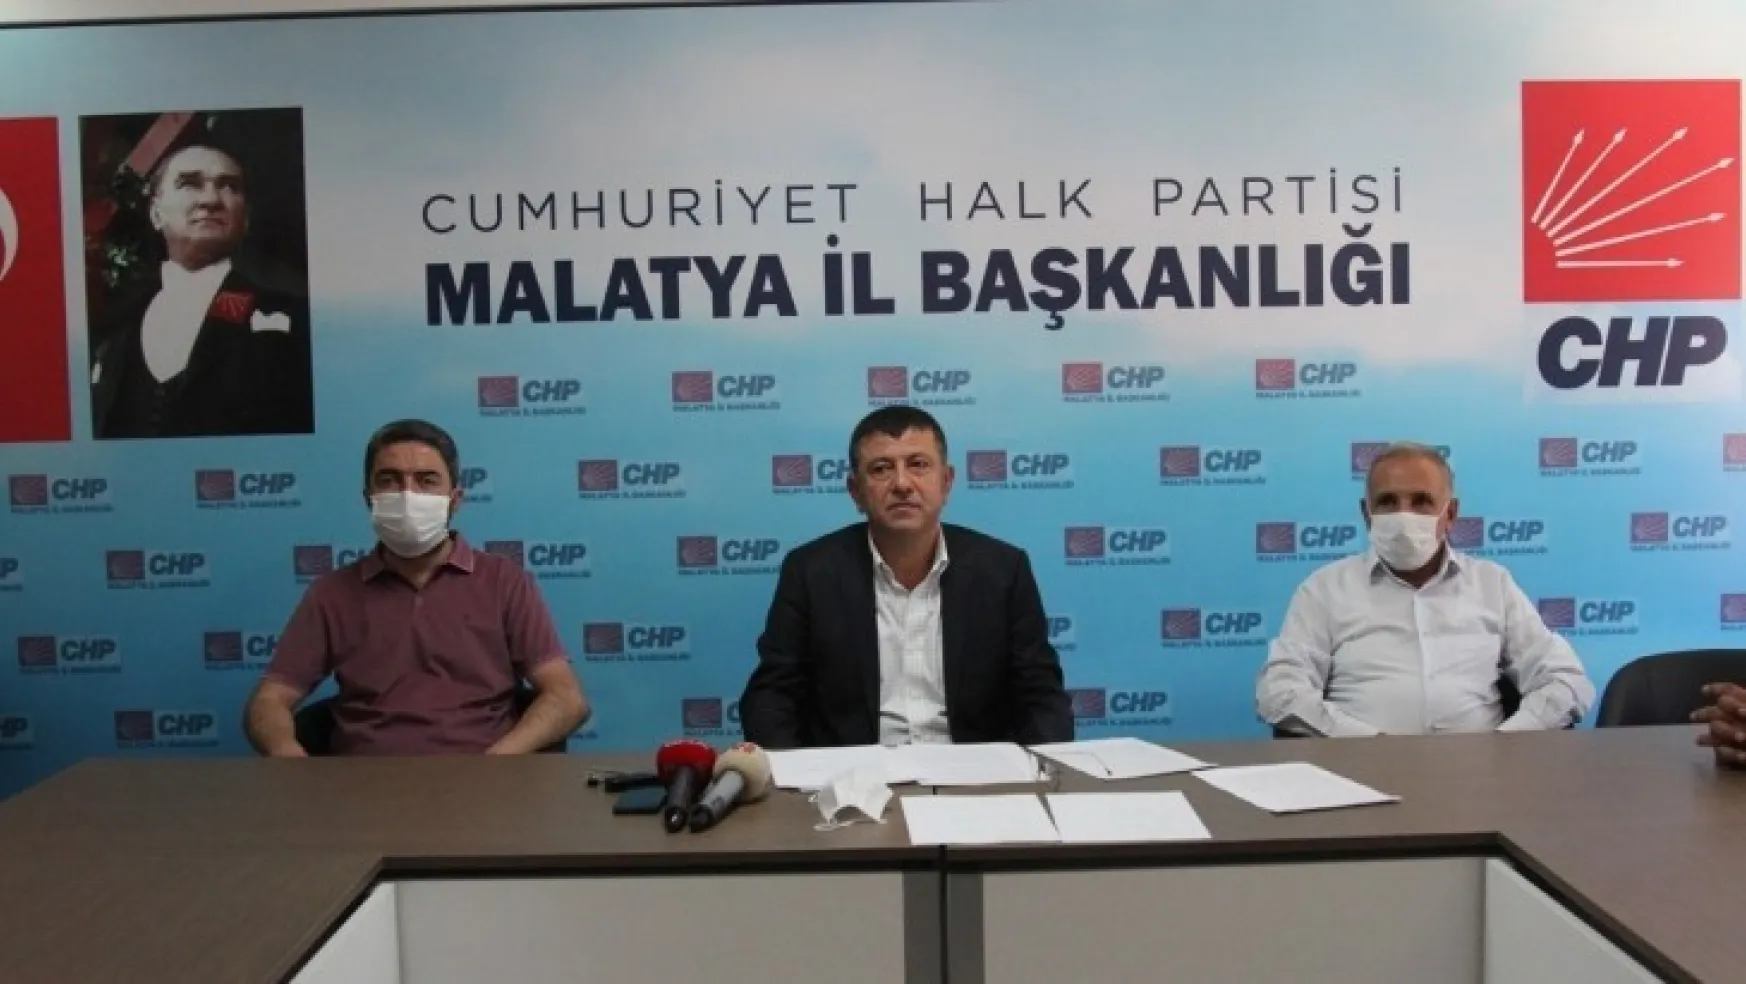 CHP Malatya Milletvekili Veli Ağbaba'nın basın toplantısında Malatya ile ilgili değerlendirmeleri